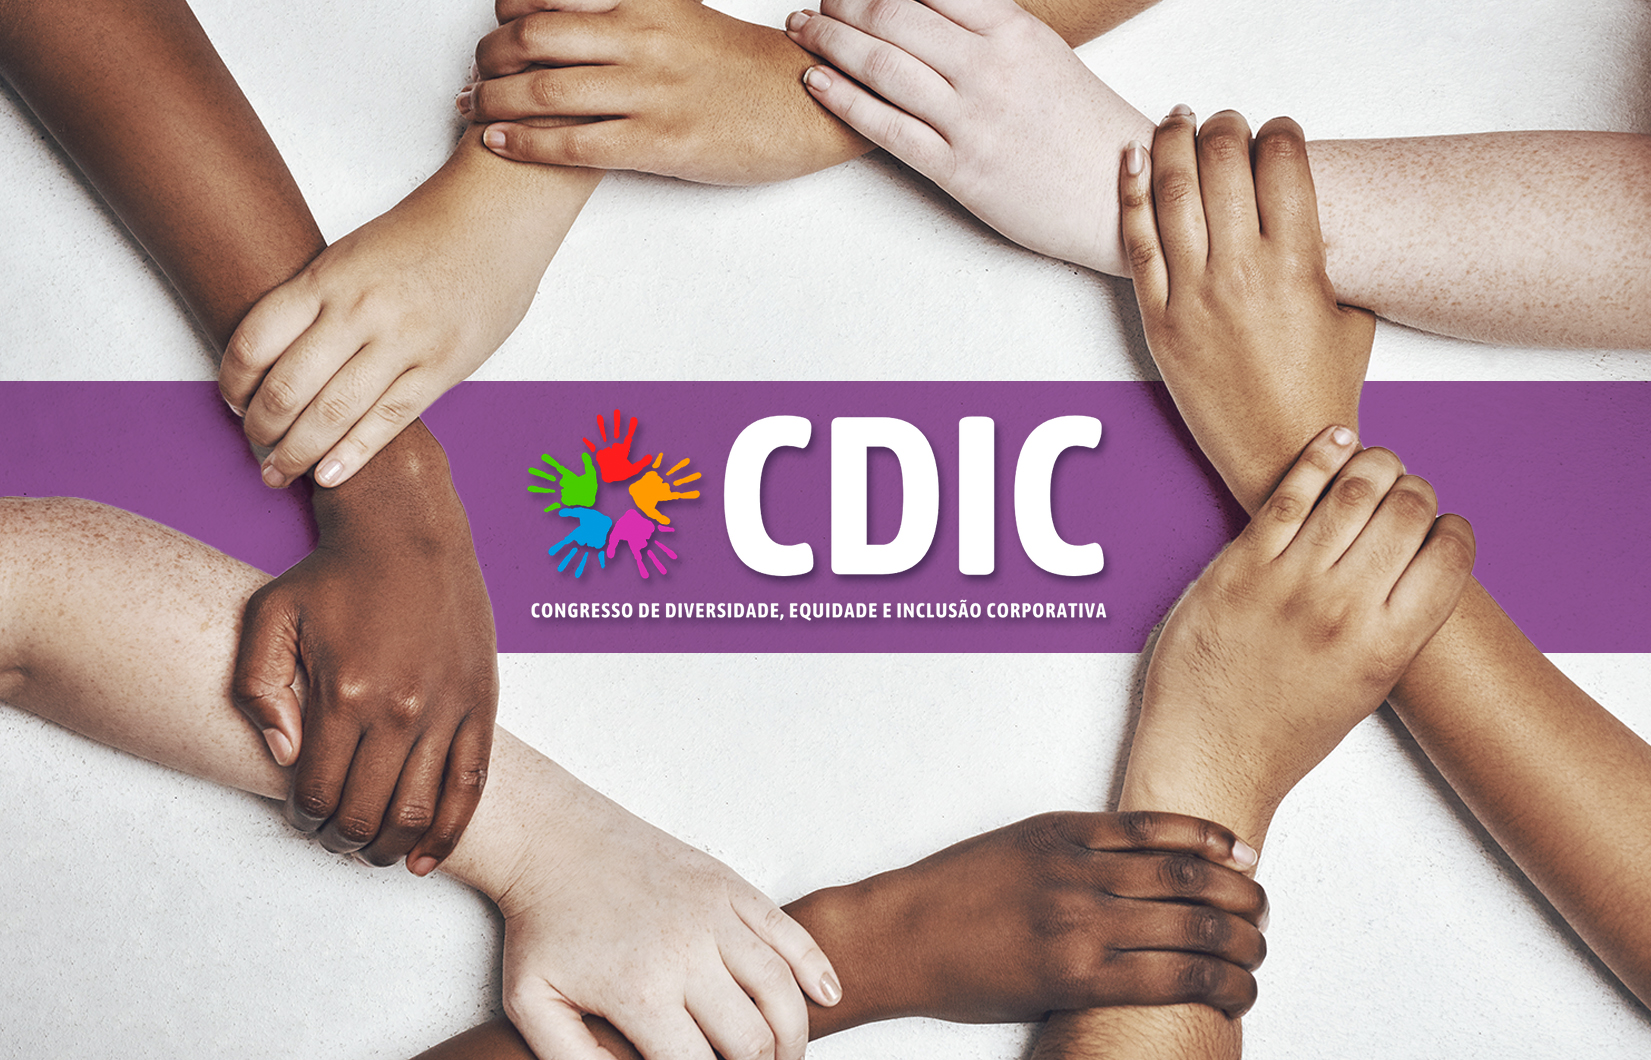 Mãos de várias cores juntas formando um escudo com a escrita no meio: CDIC